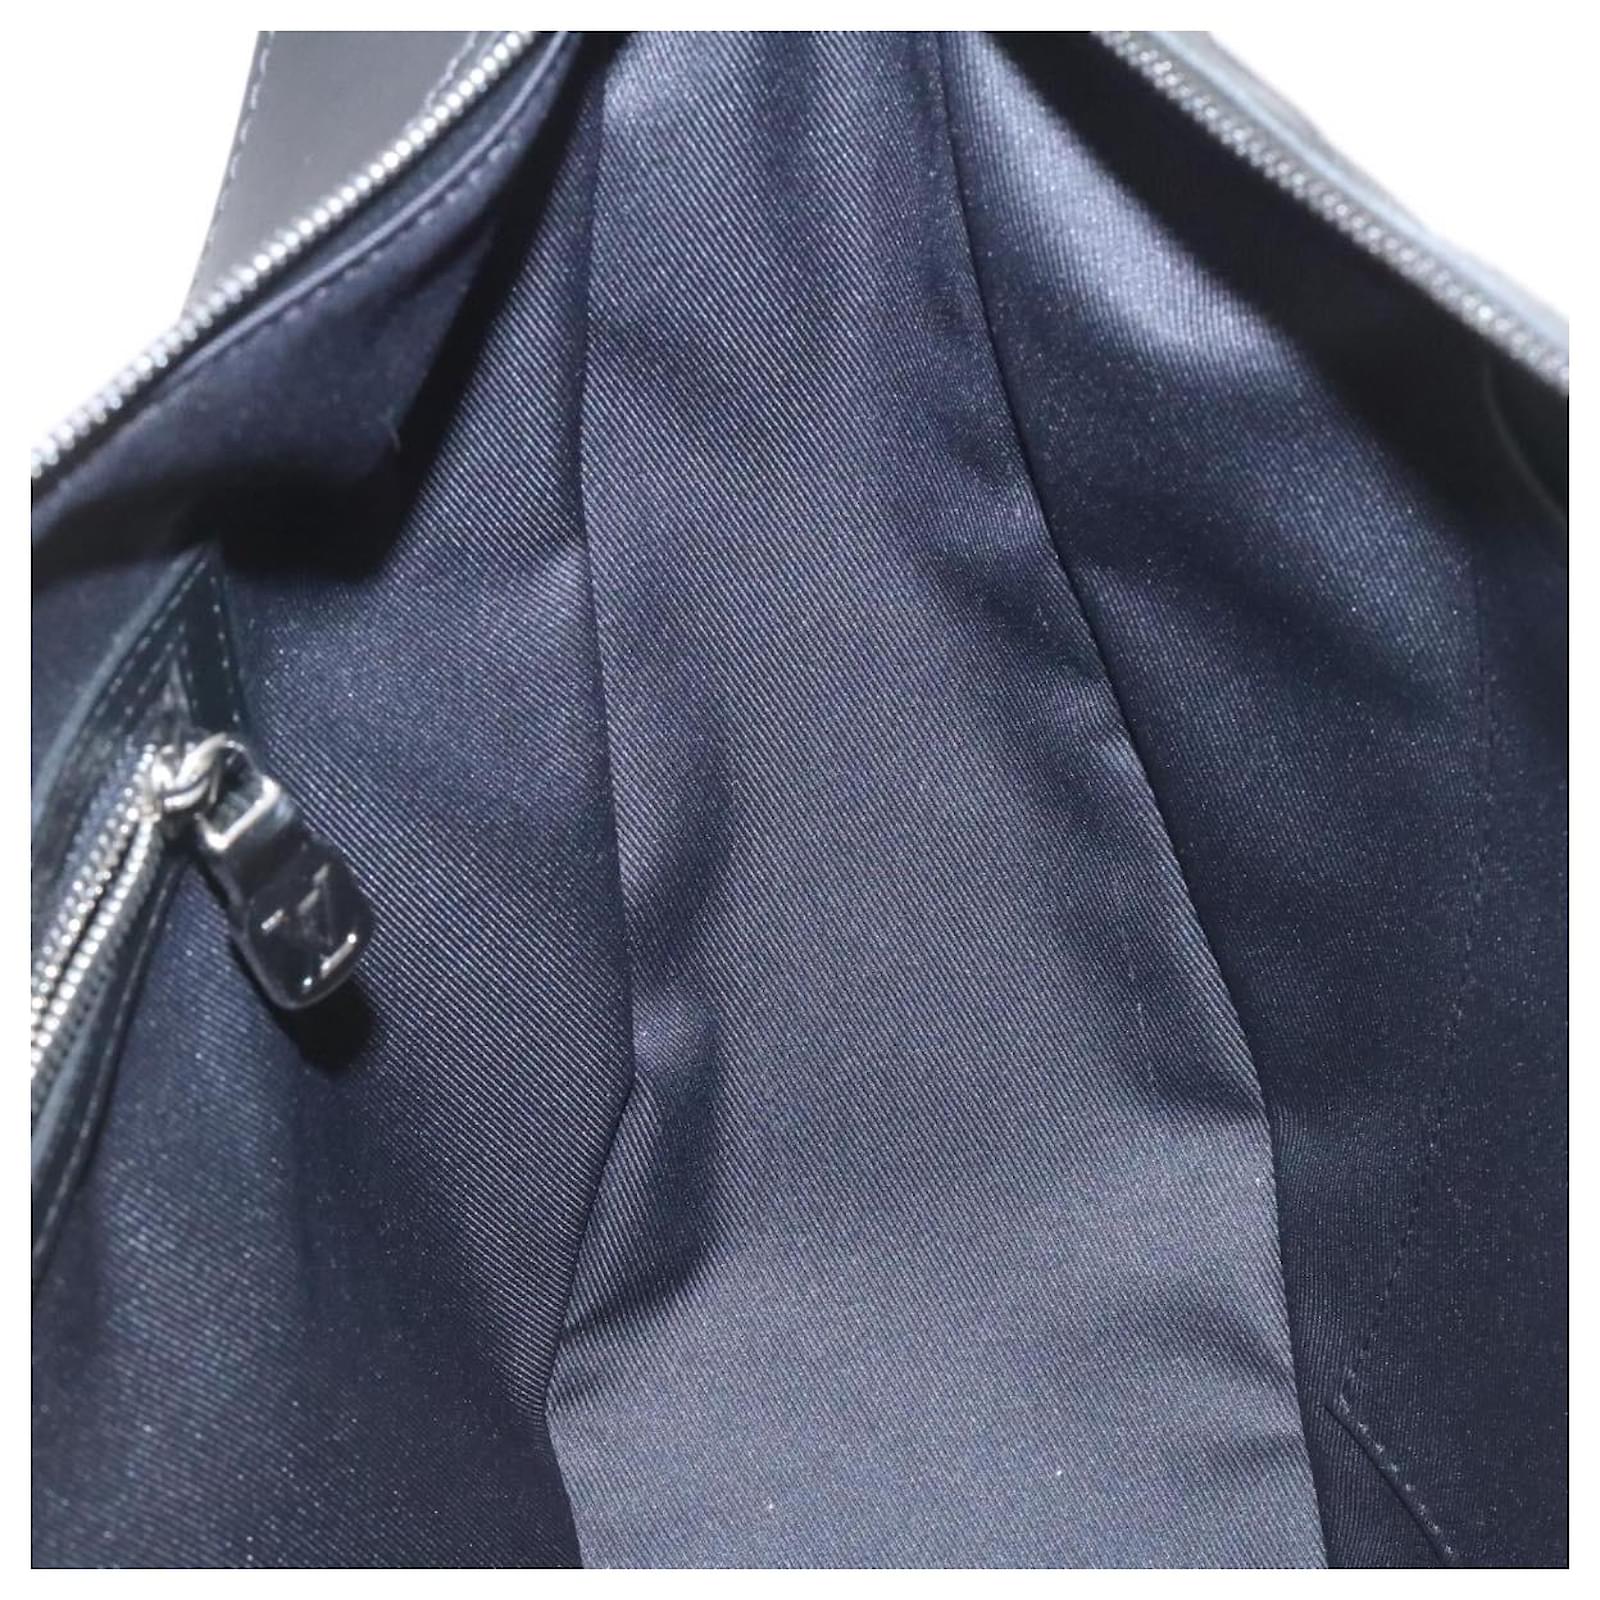 Authenticated used Louis Vuitton Louis Vuitton Alpha Hobo Monogram Galaxy Shoulder Bag M44164 PVC Leather Gray Black, Adult Unisex, Size: (HxWxD)